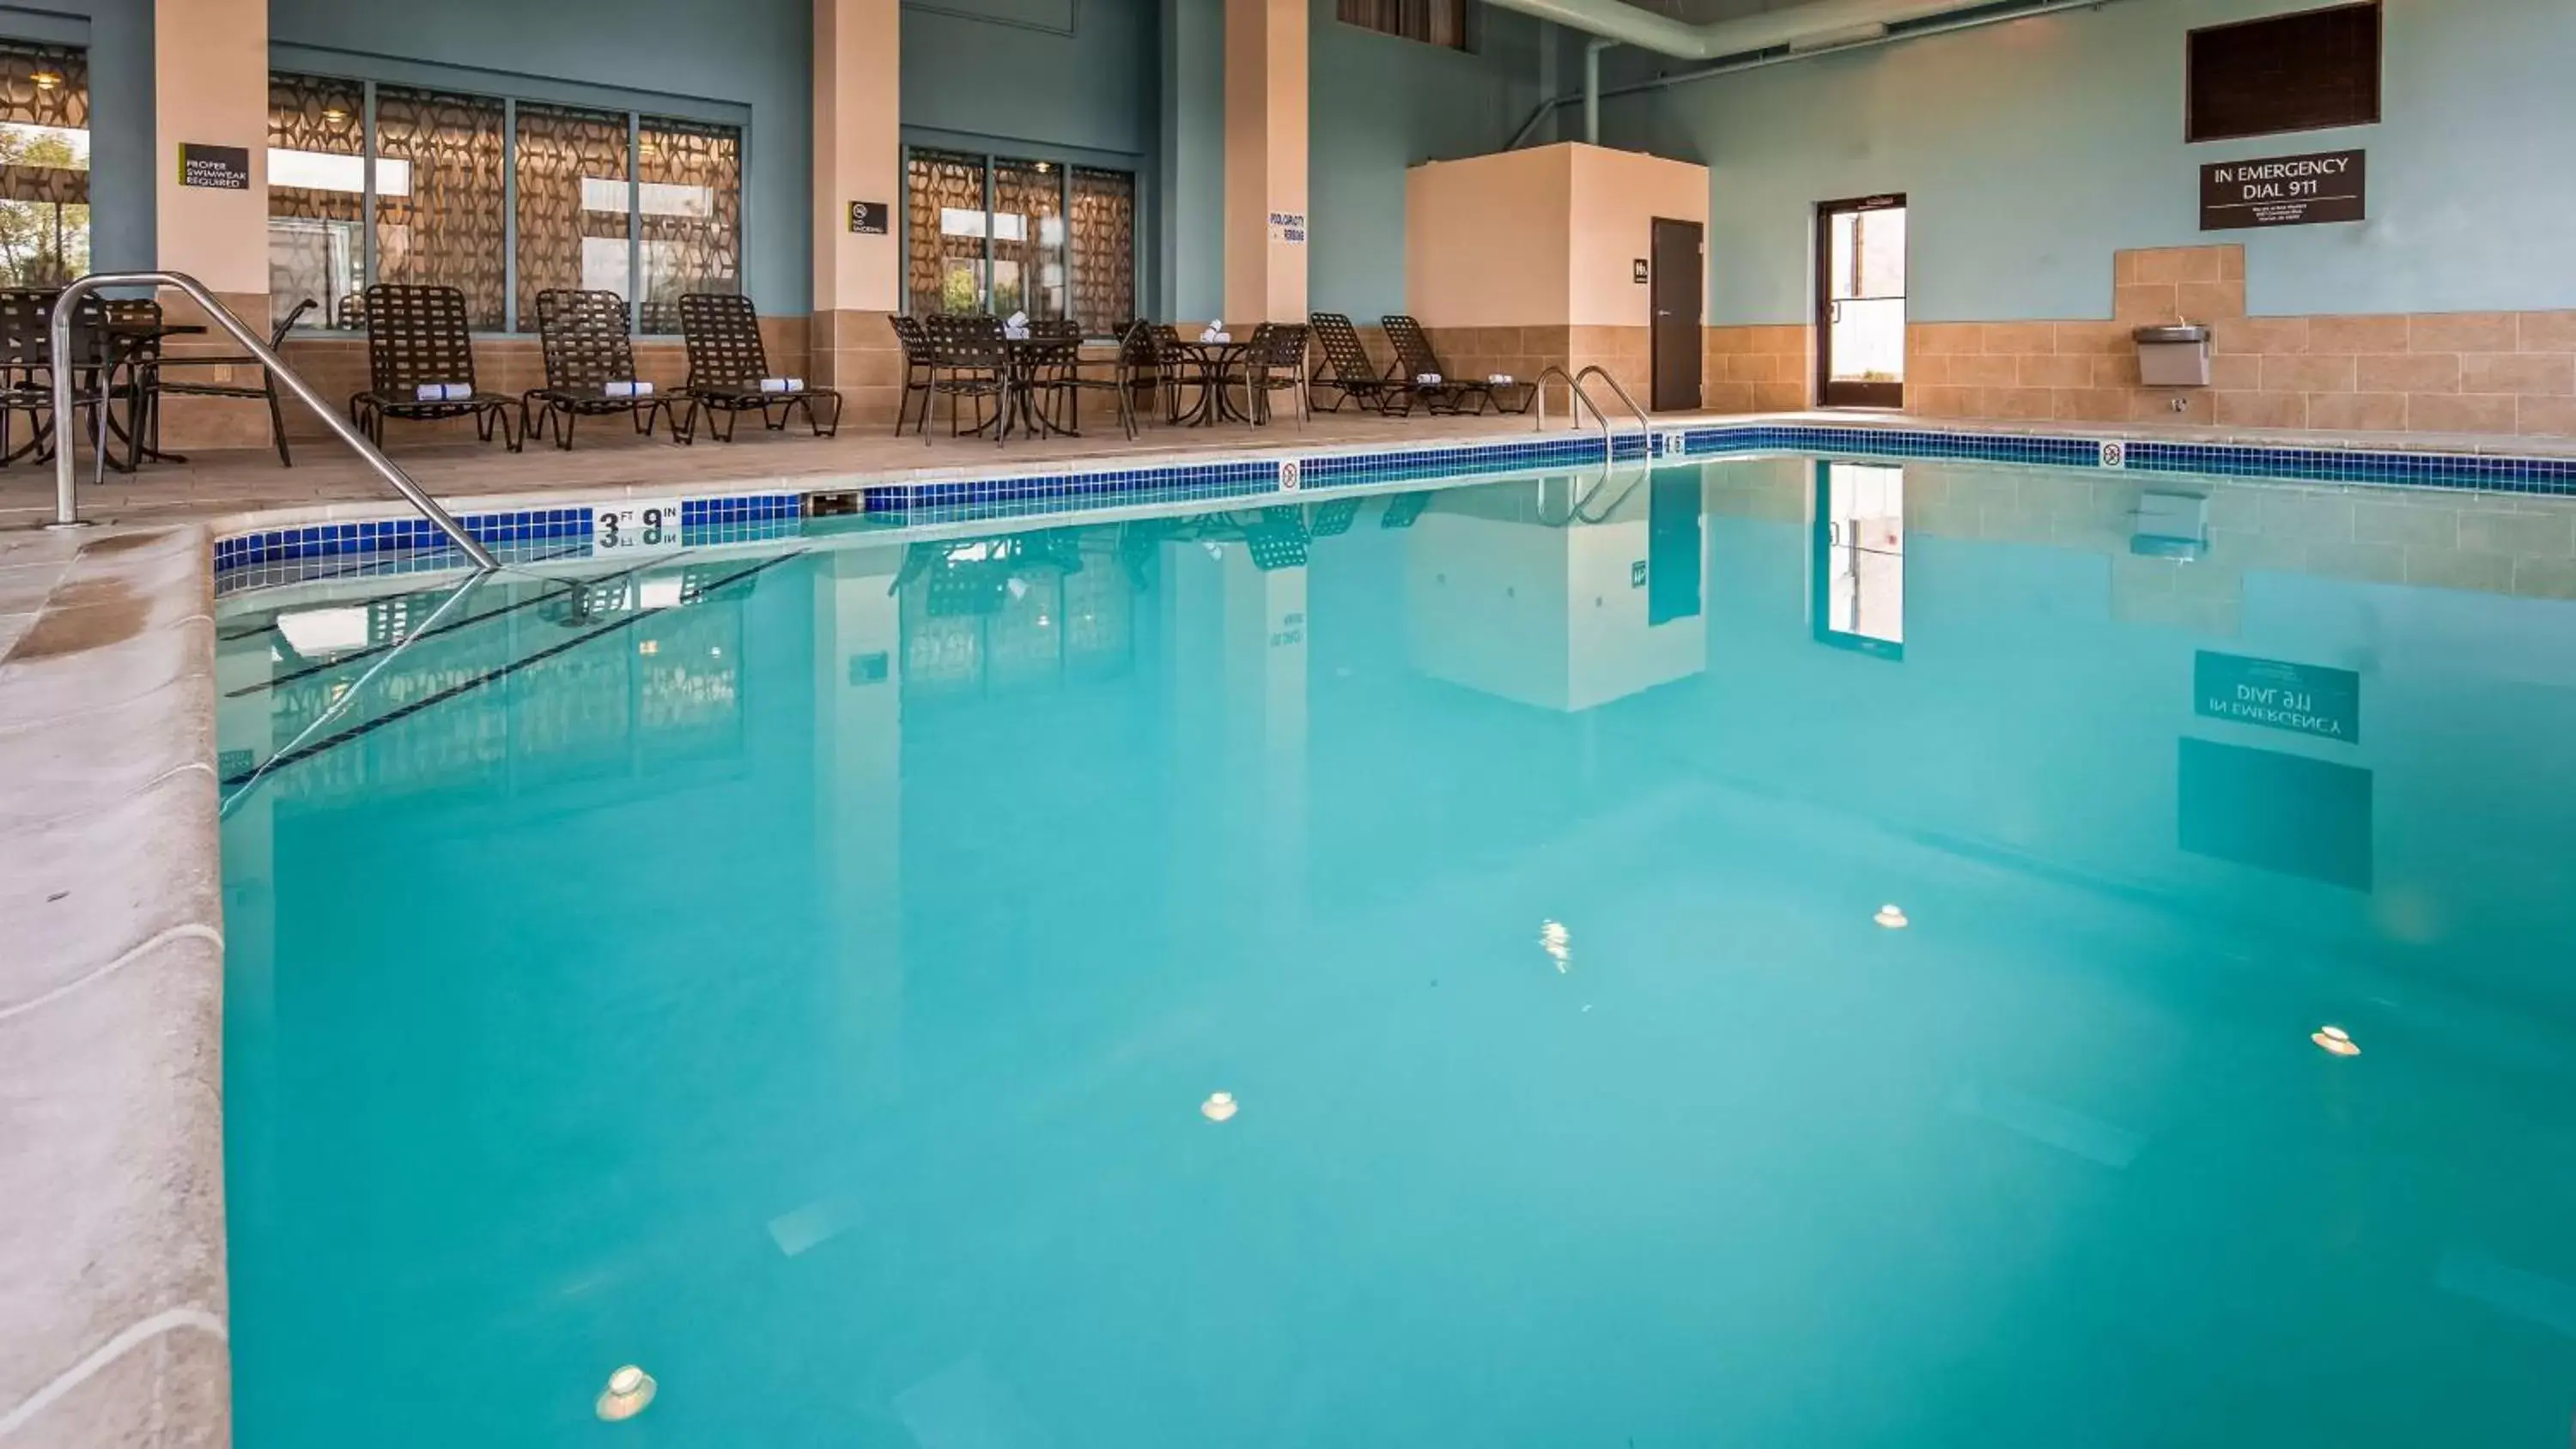 On site, Swimming Pool in Best Western Warren Hotel